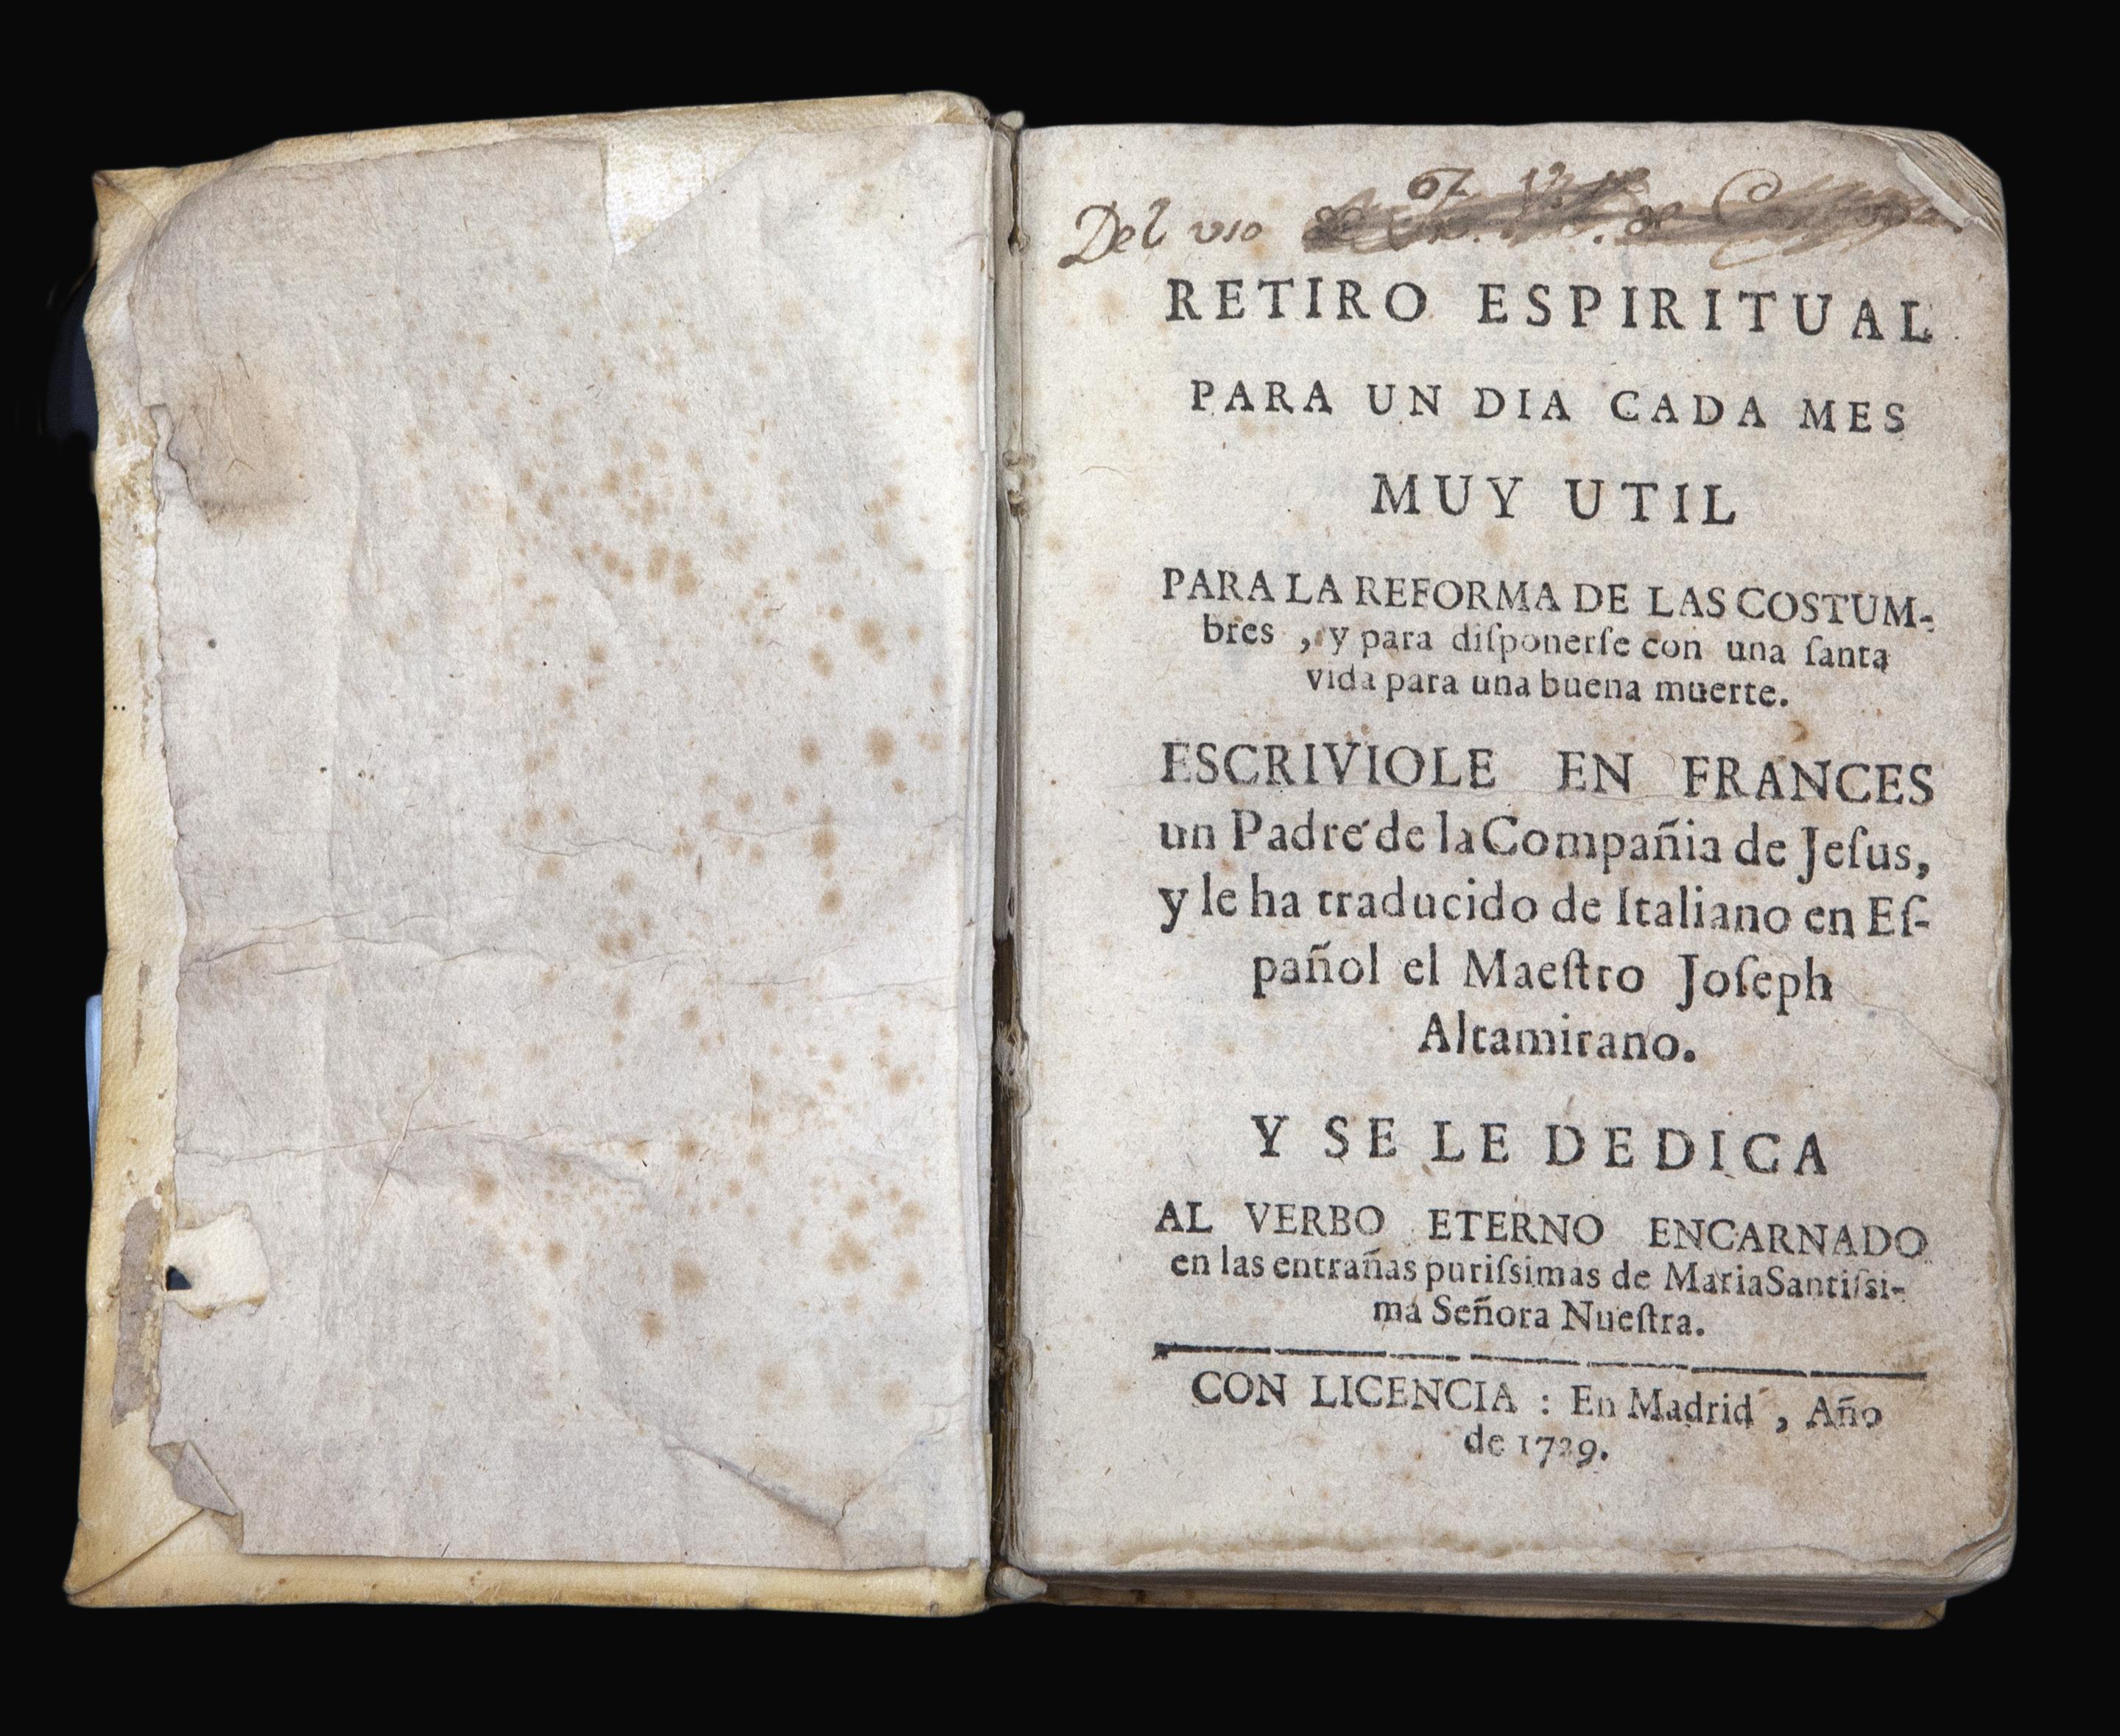 RETIRO ESPIRITUAL PARA UN DÍA CADA MES, 1729.